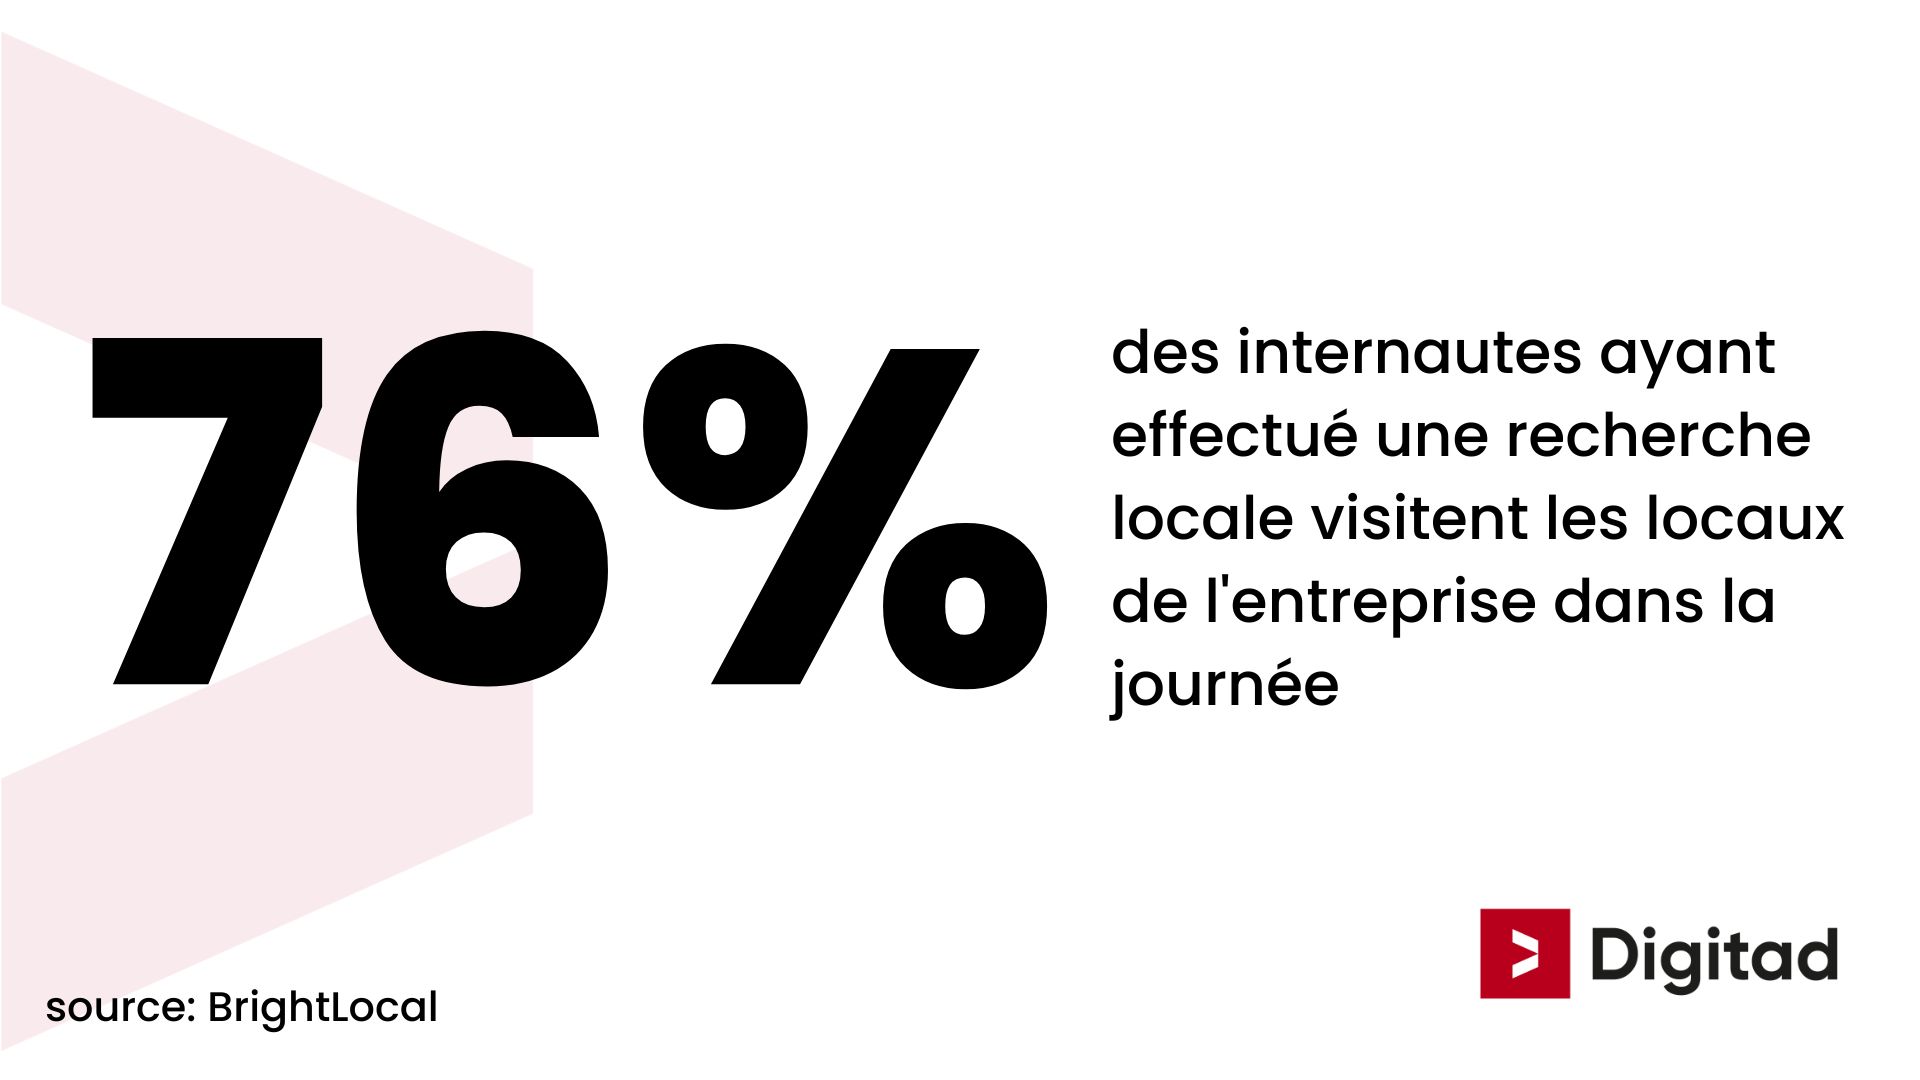 76% des internautes qui font une recherche locale visitent les locaux de l'entreprise dans la journée